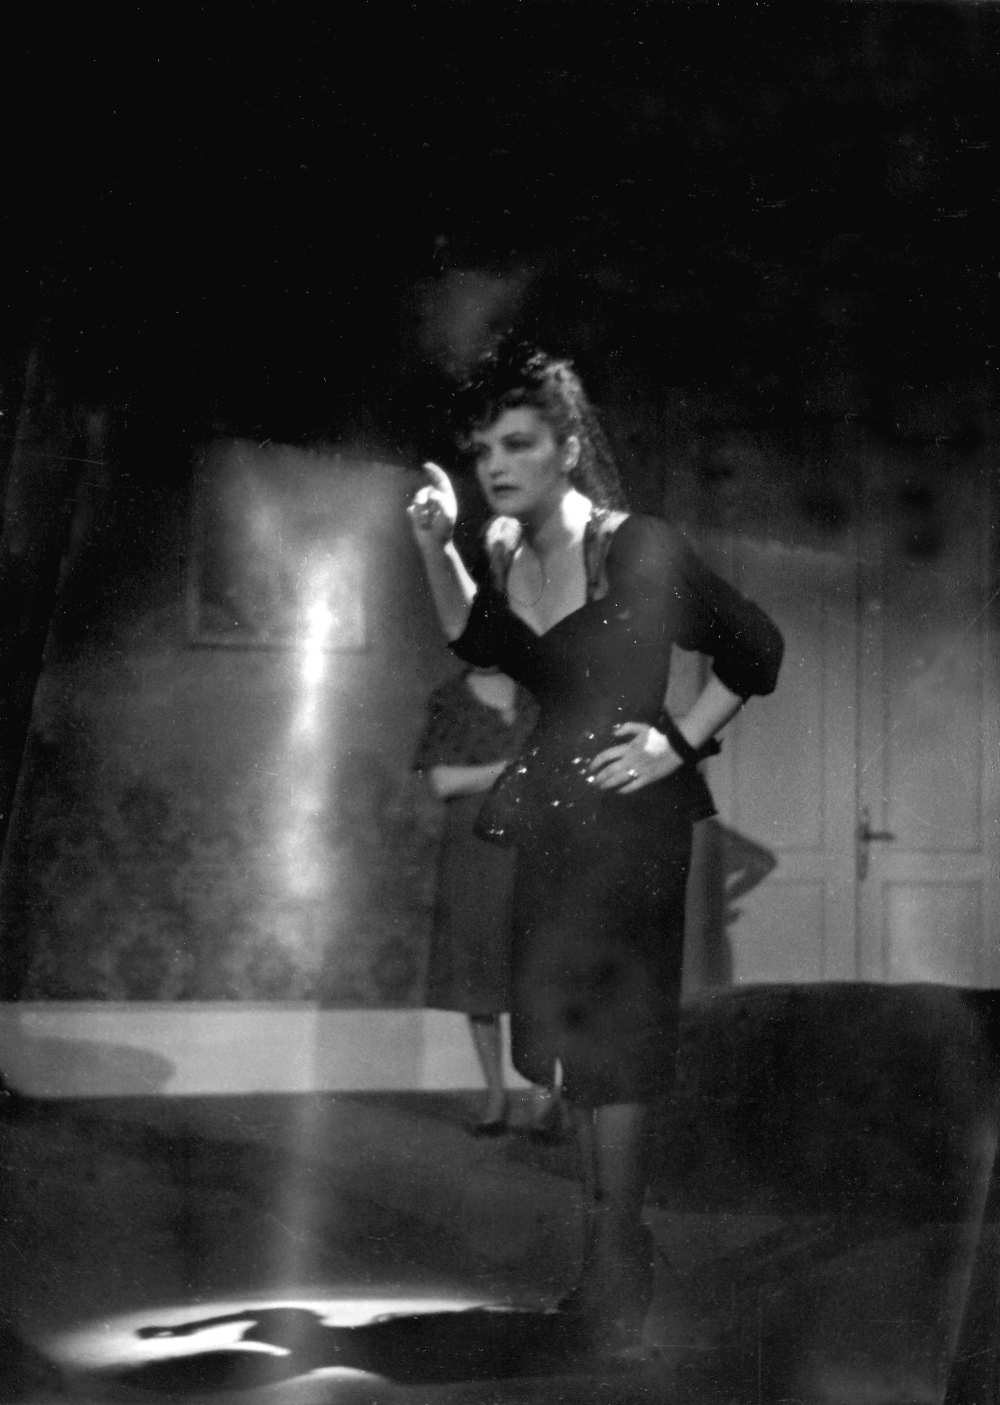 Luigi Pirandello: Hat szerep keres egy szerzőt. Rendezte Hegedűs Tibor. Vígszínház, 1943. május 7. Tolnay Klári mint Mostohalány. Escher Károly felvétele